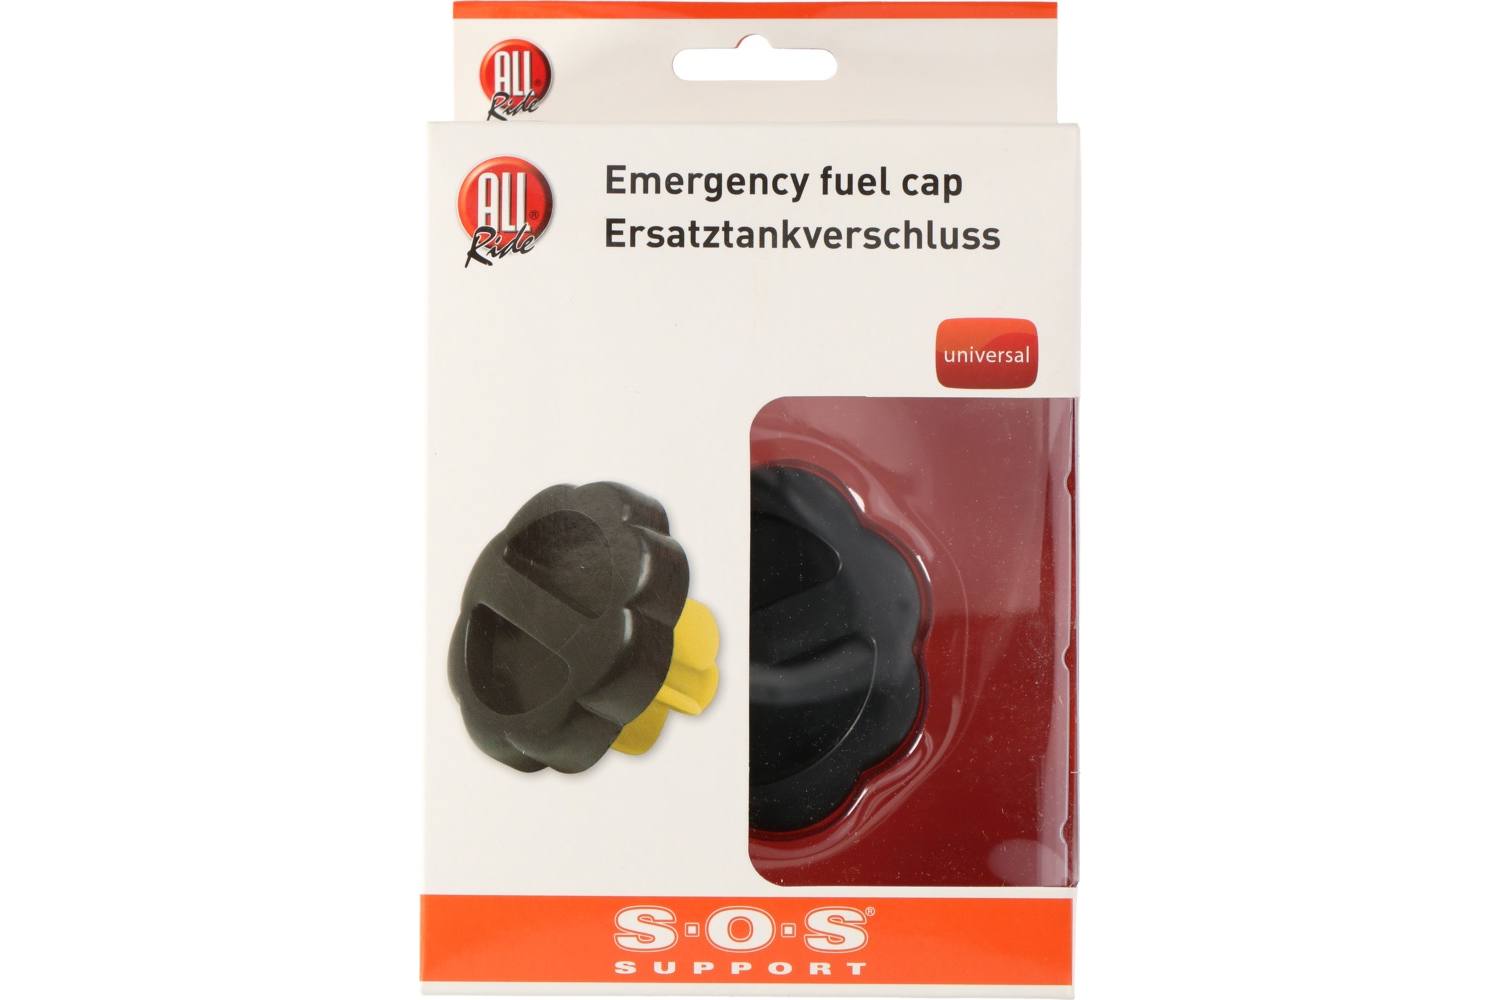 Fuel cap, ALLRIDE SOS support, universal 2